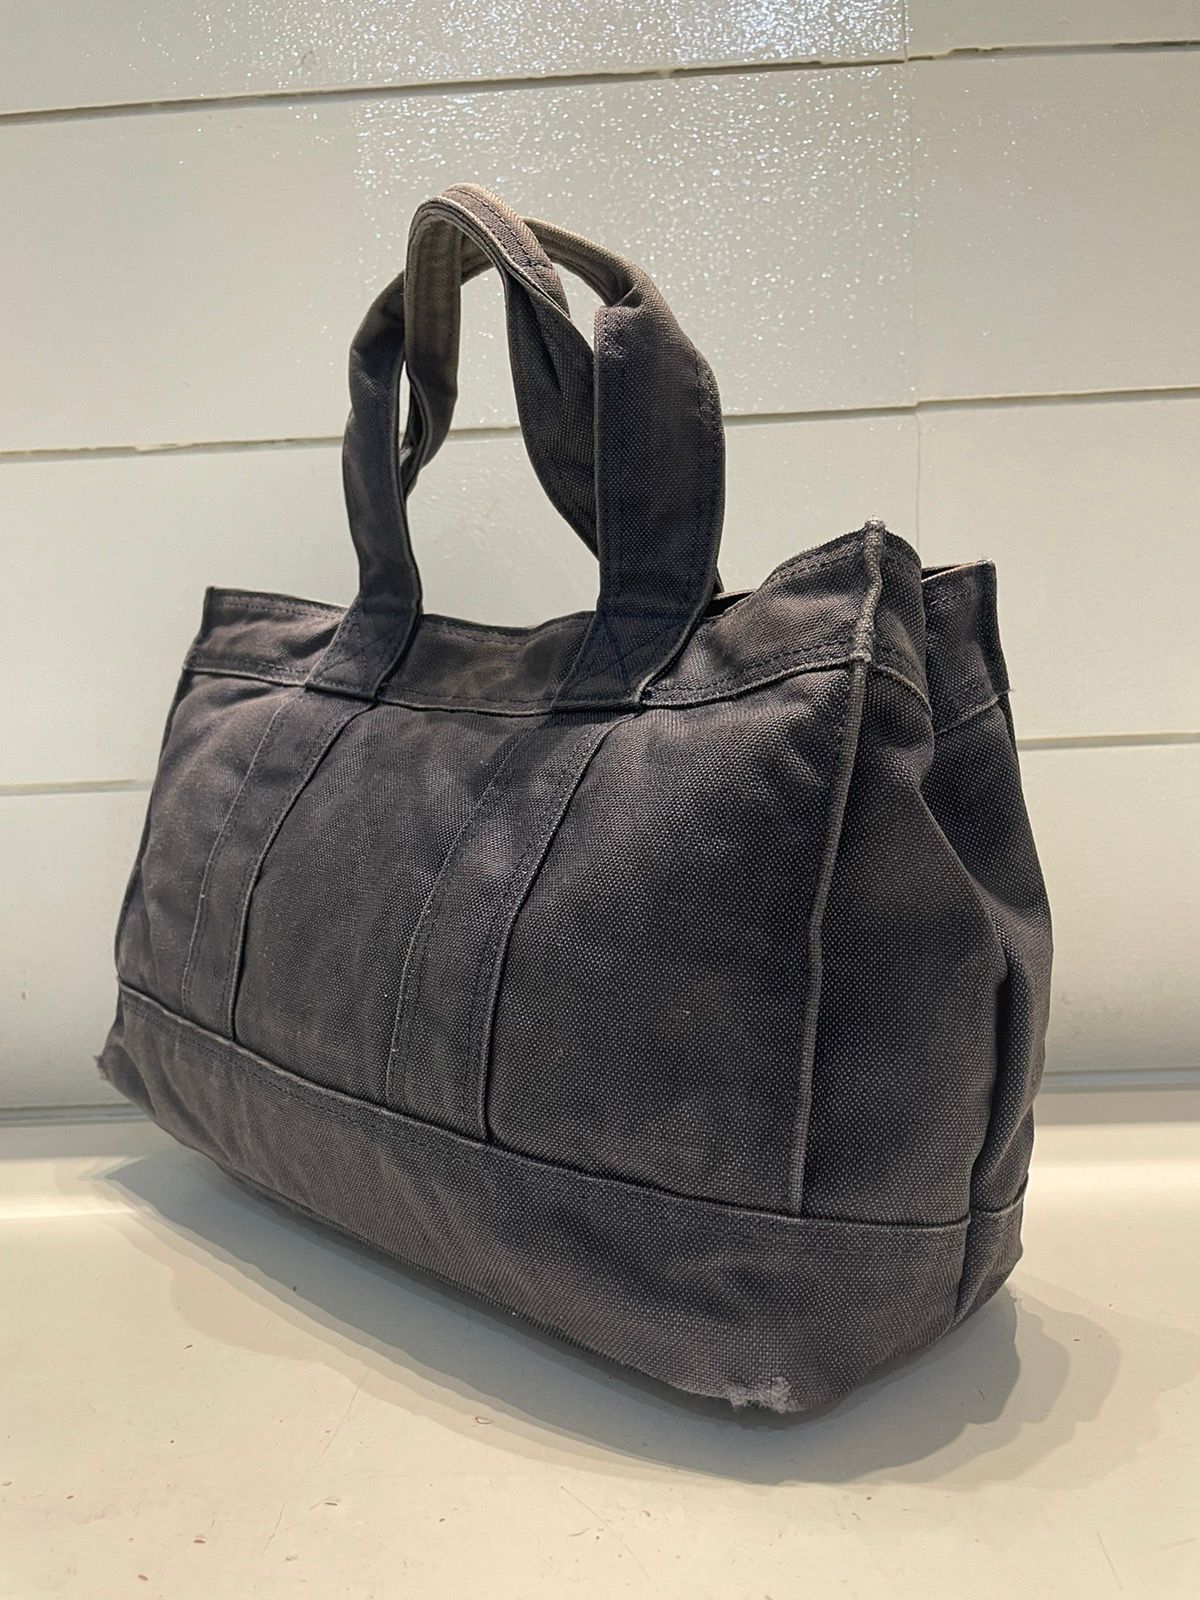 Porter Made In Japan Black Denim Tote Bag Denim Material - 9